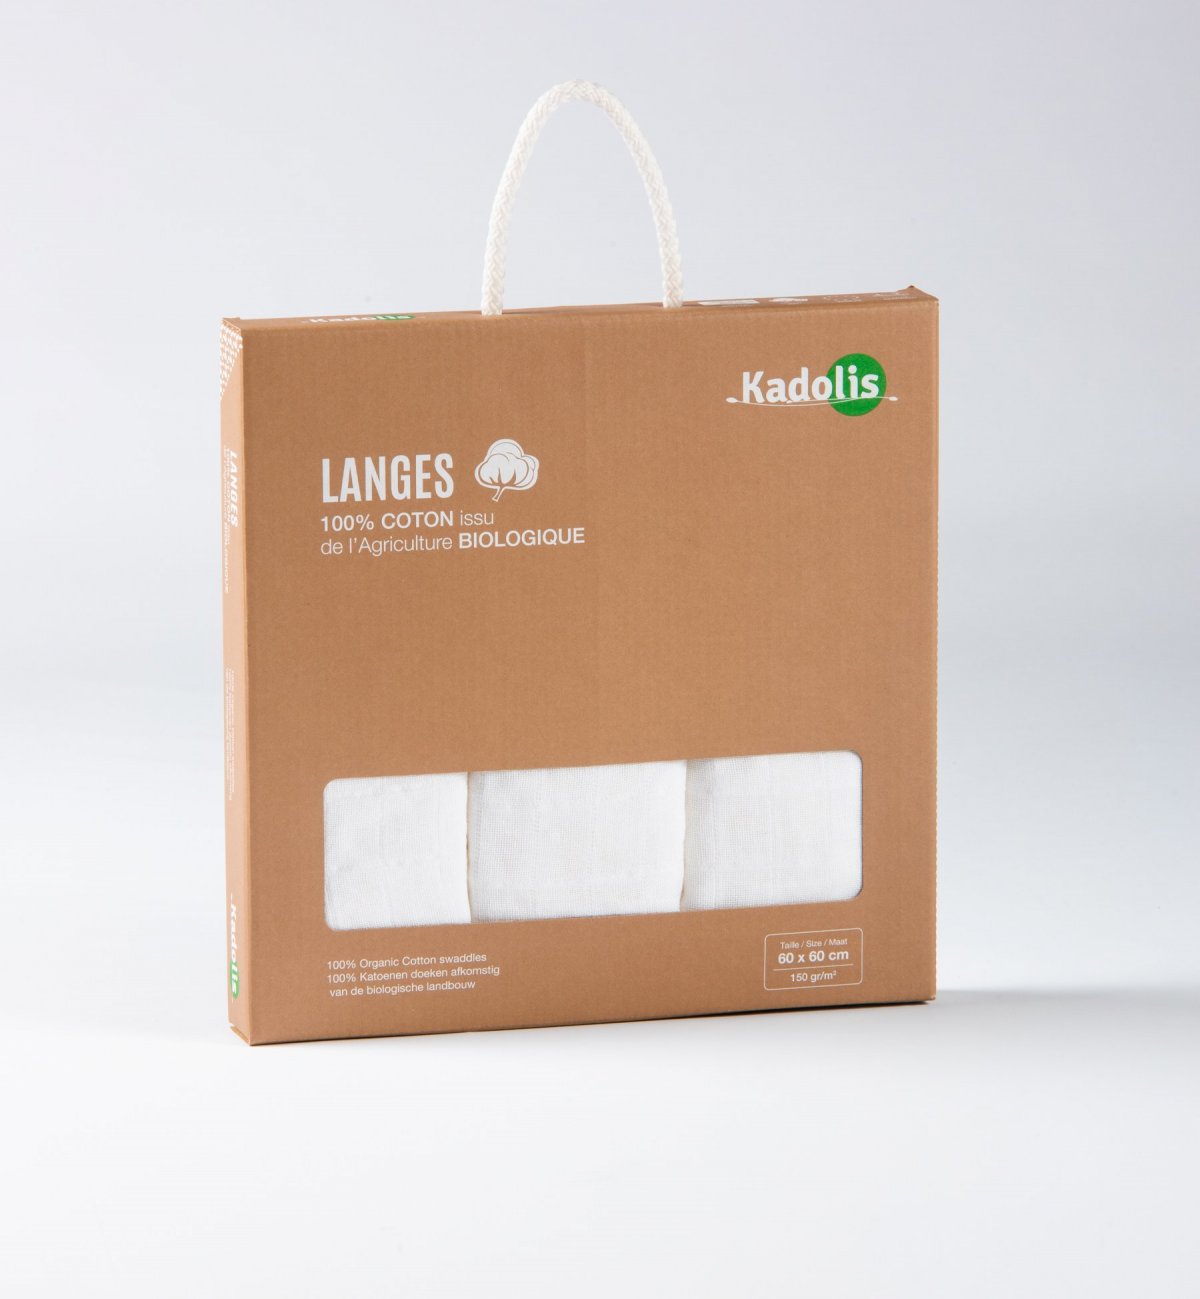 Set of 3 Organic Cotton diapers in plain colors 70x70 cm - Kadolis